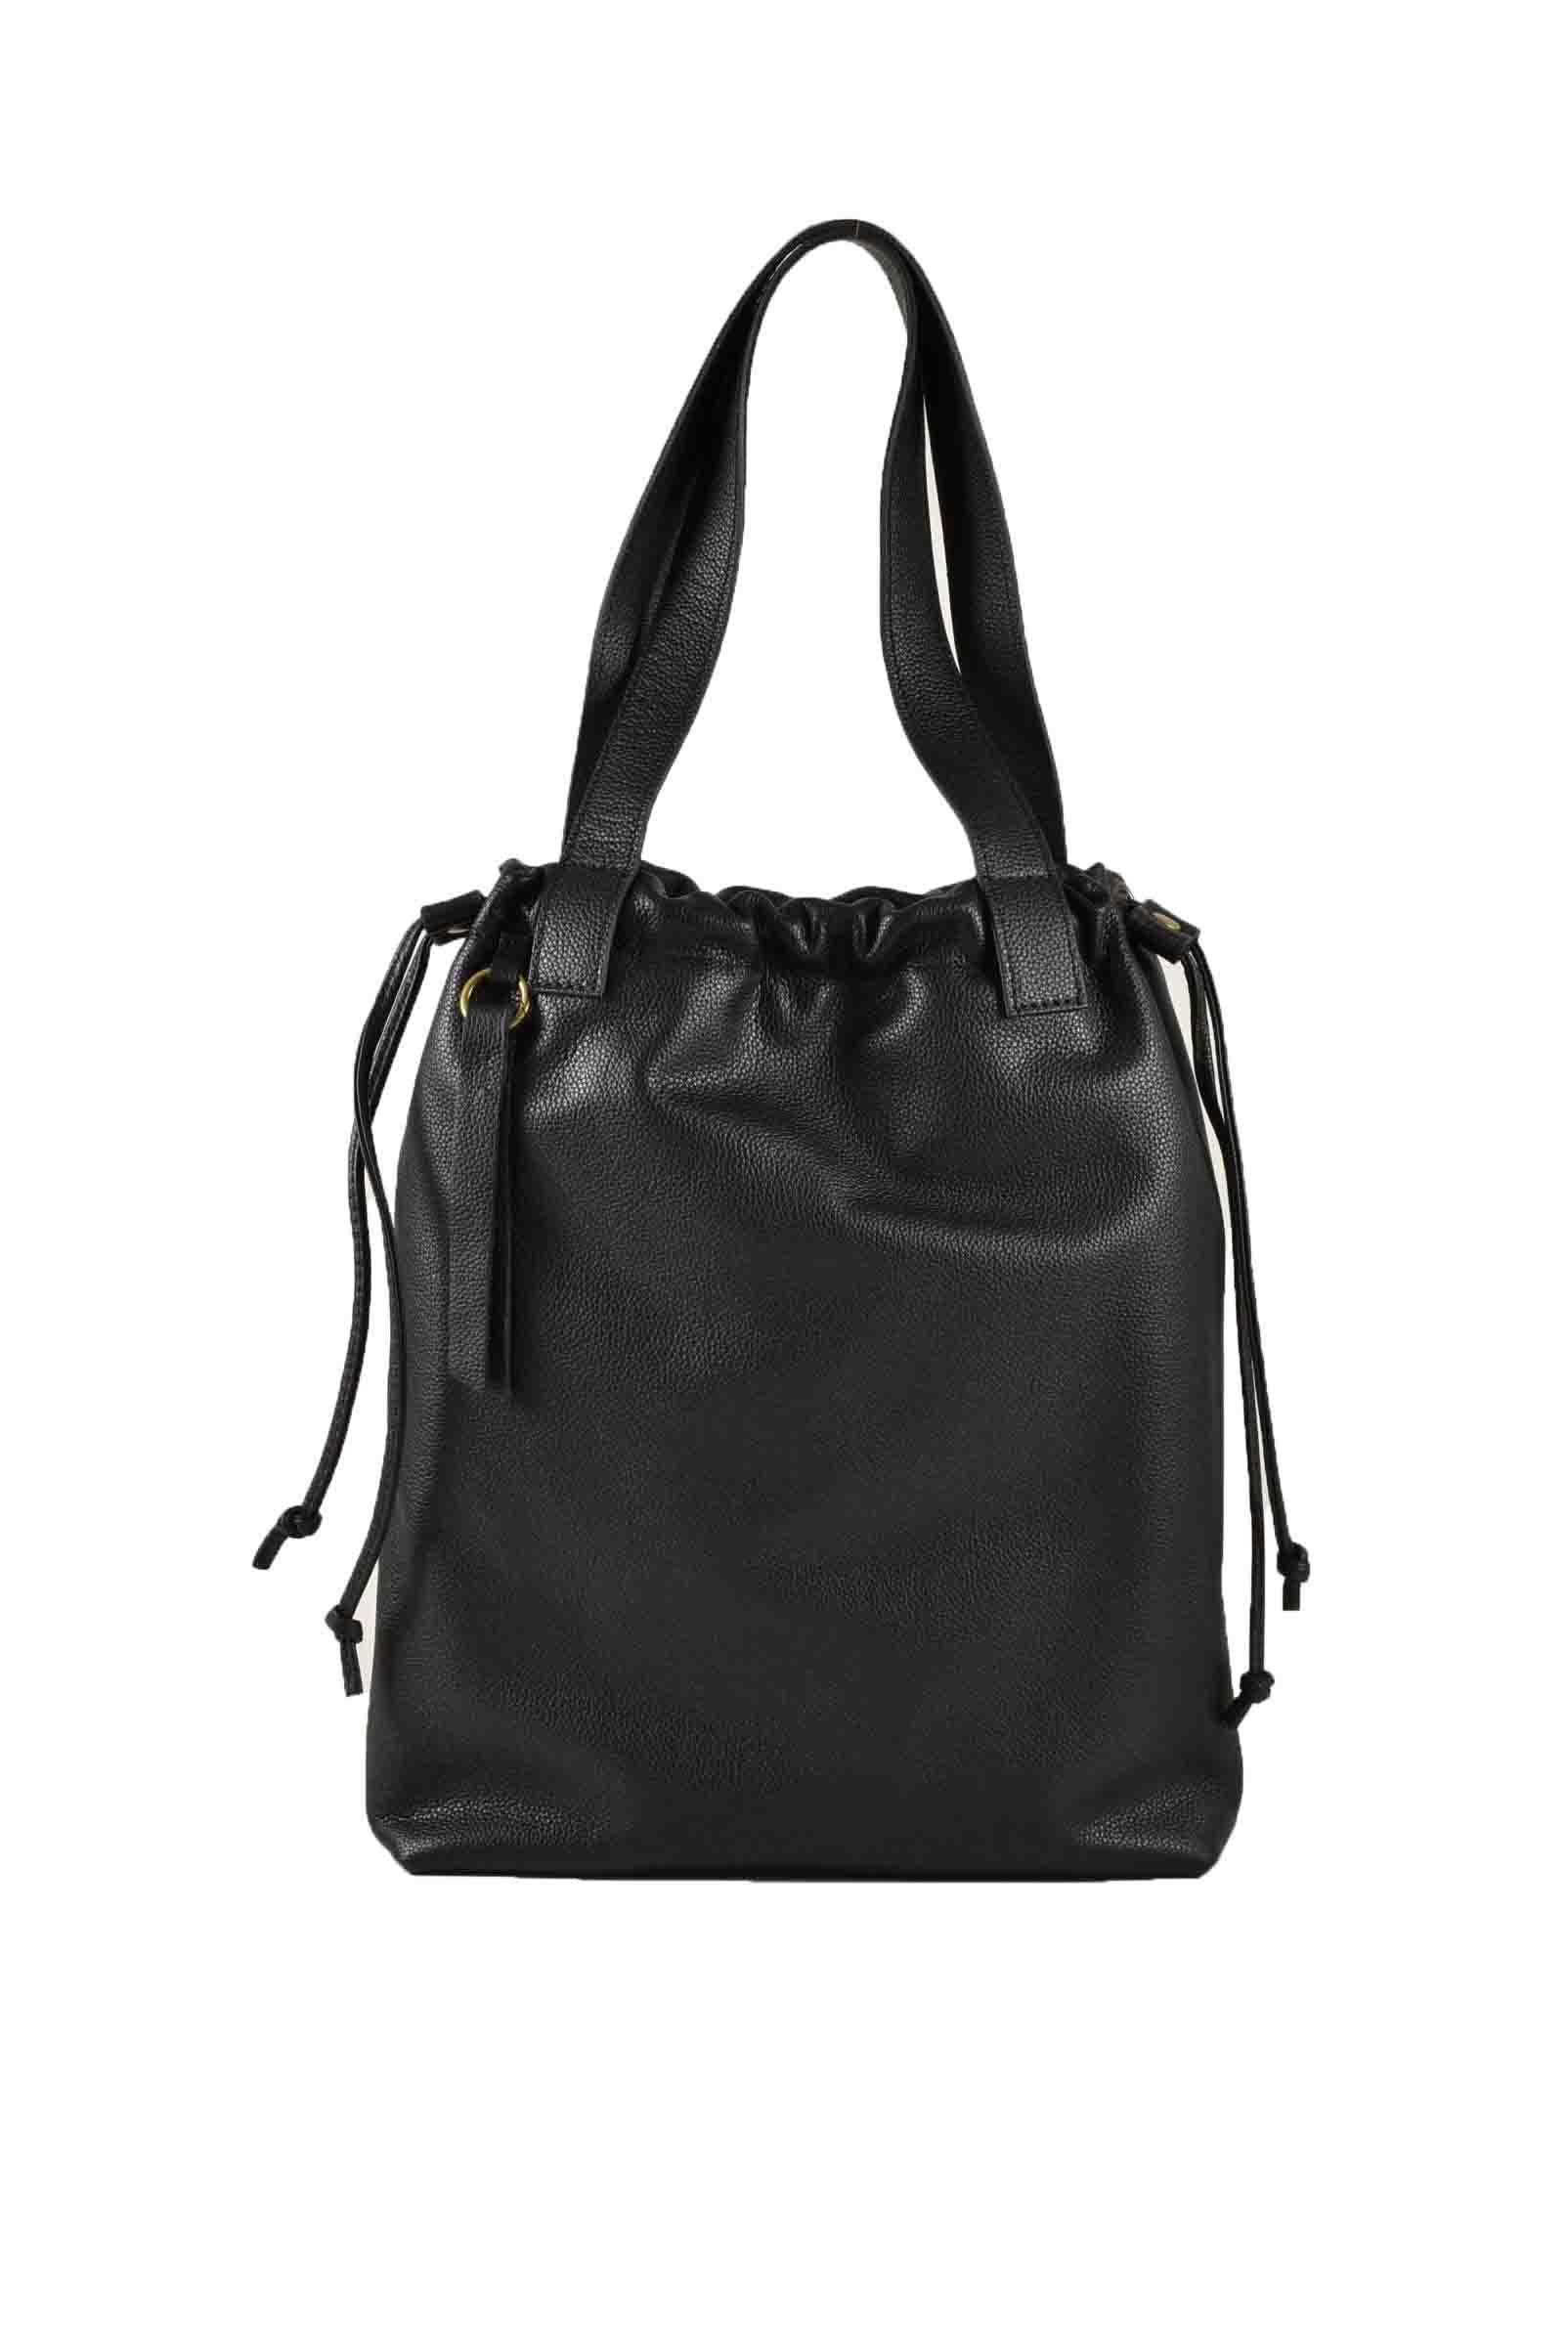 Corsia Women's Black Handbag